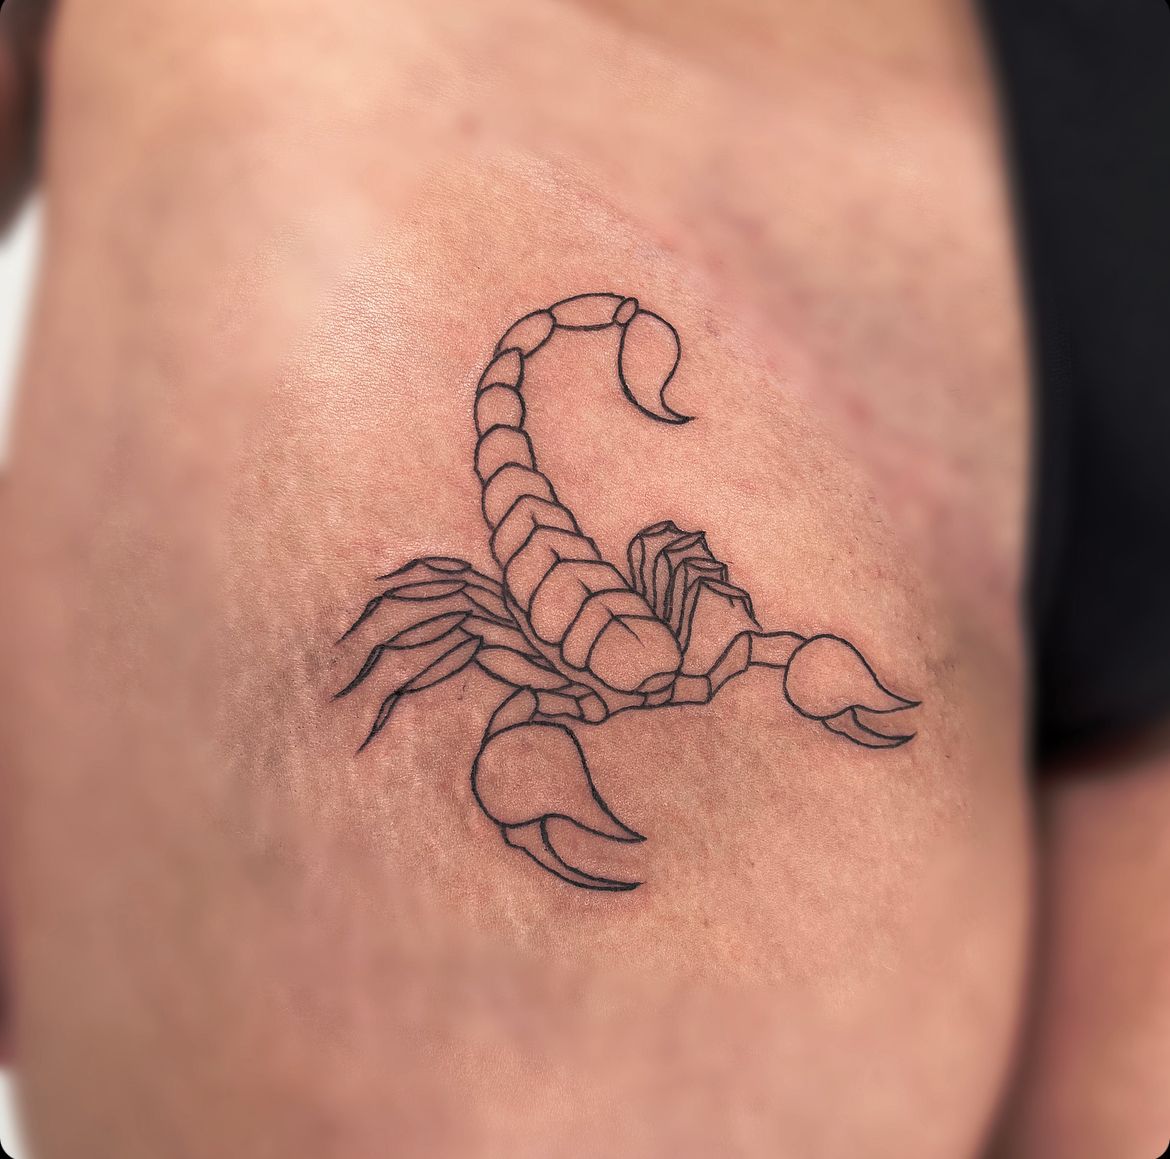 Fine line scorpion tattoo on the pelvis.